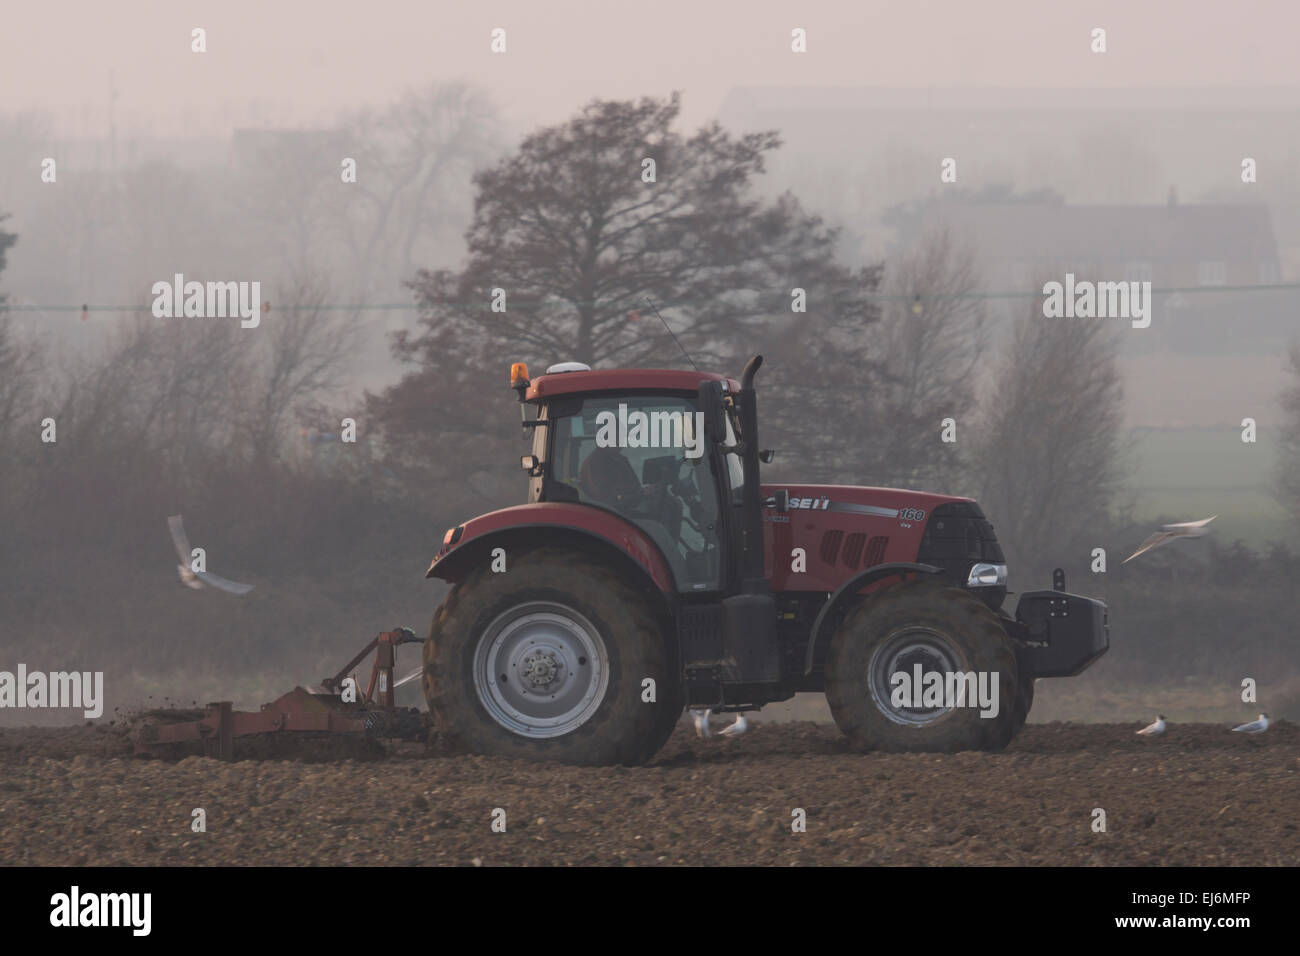 Un trattore rosso aratri in questo campo, durante una giornata di nebbia. gabbiani volano intorno al trattore sperando possano ottenere qualcosa. Foto Stock